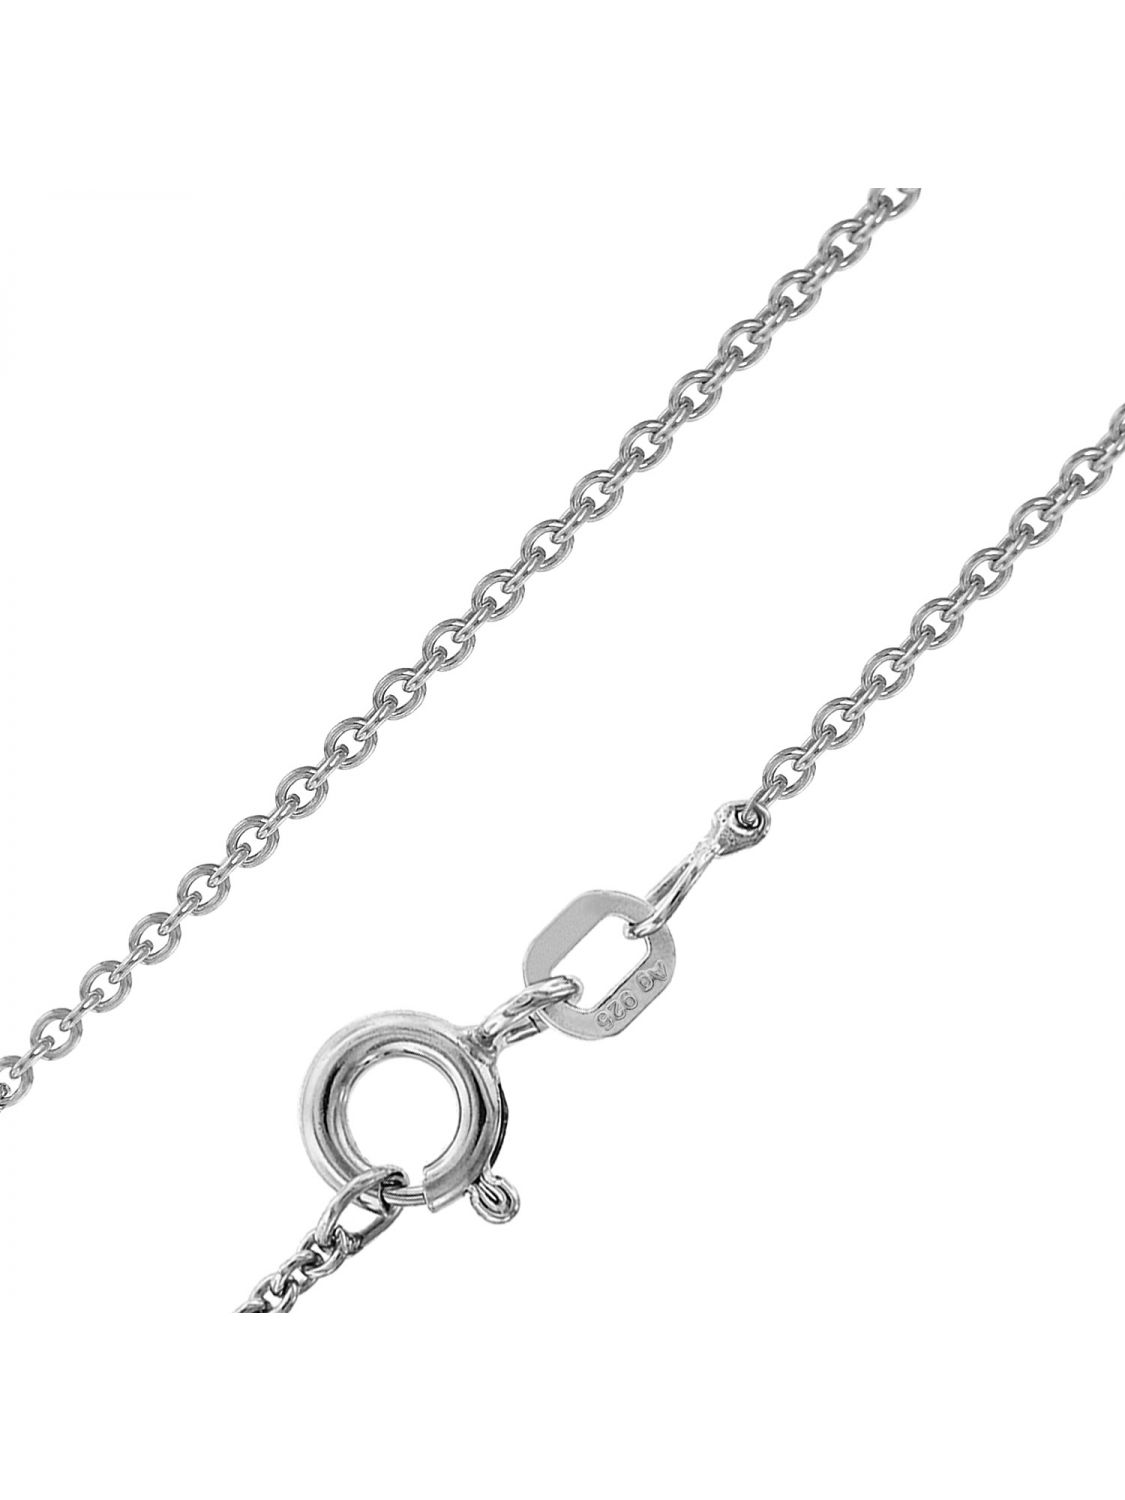 Ankerkette 925 Silber 1,5 mm 45 cm Halskette Kette Silberkette Federring